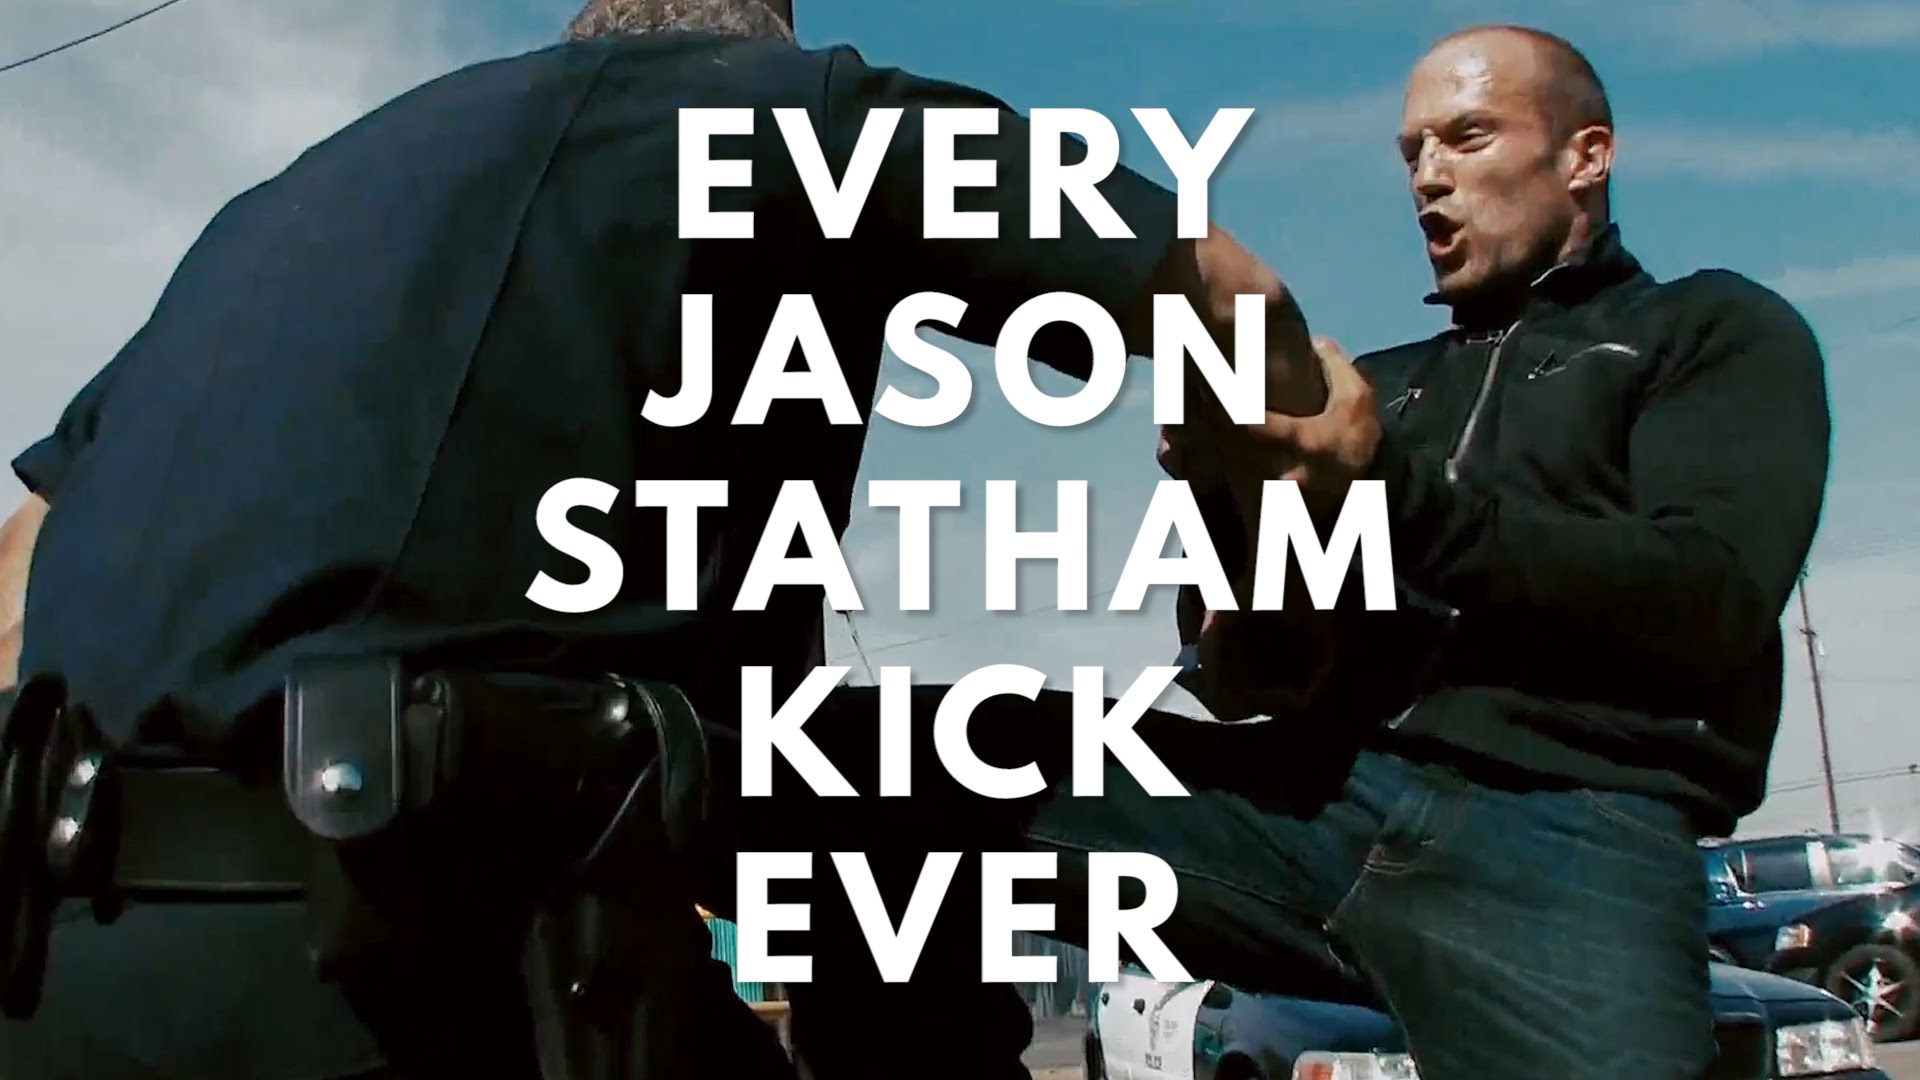 Jason Statham Kick